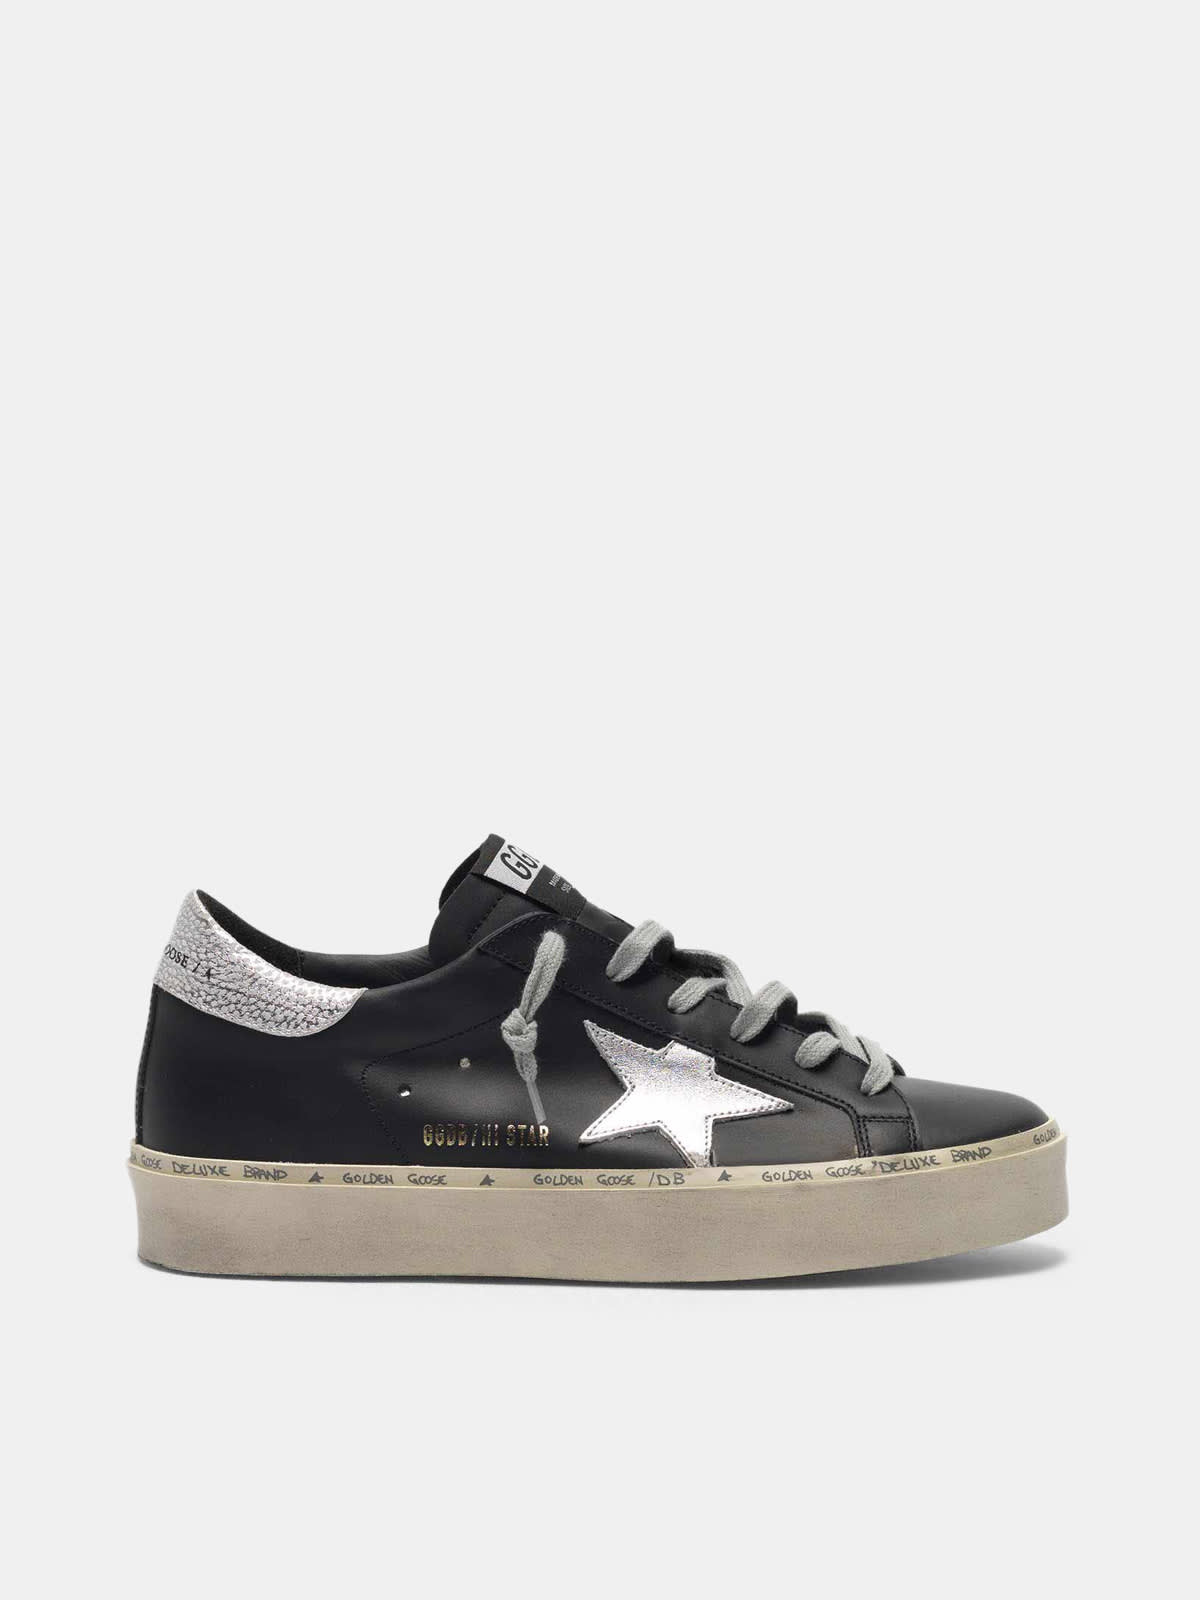 Black Hi Star sneakers with metallic star | Golden Goose